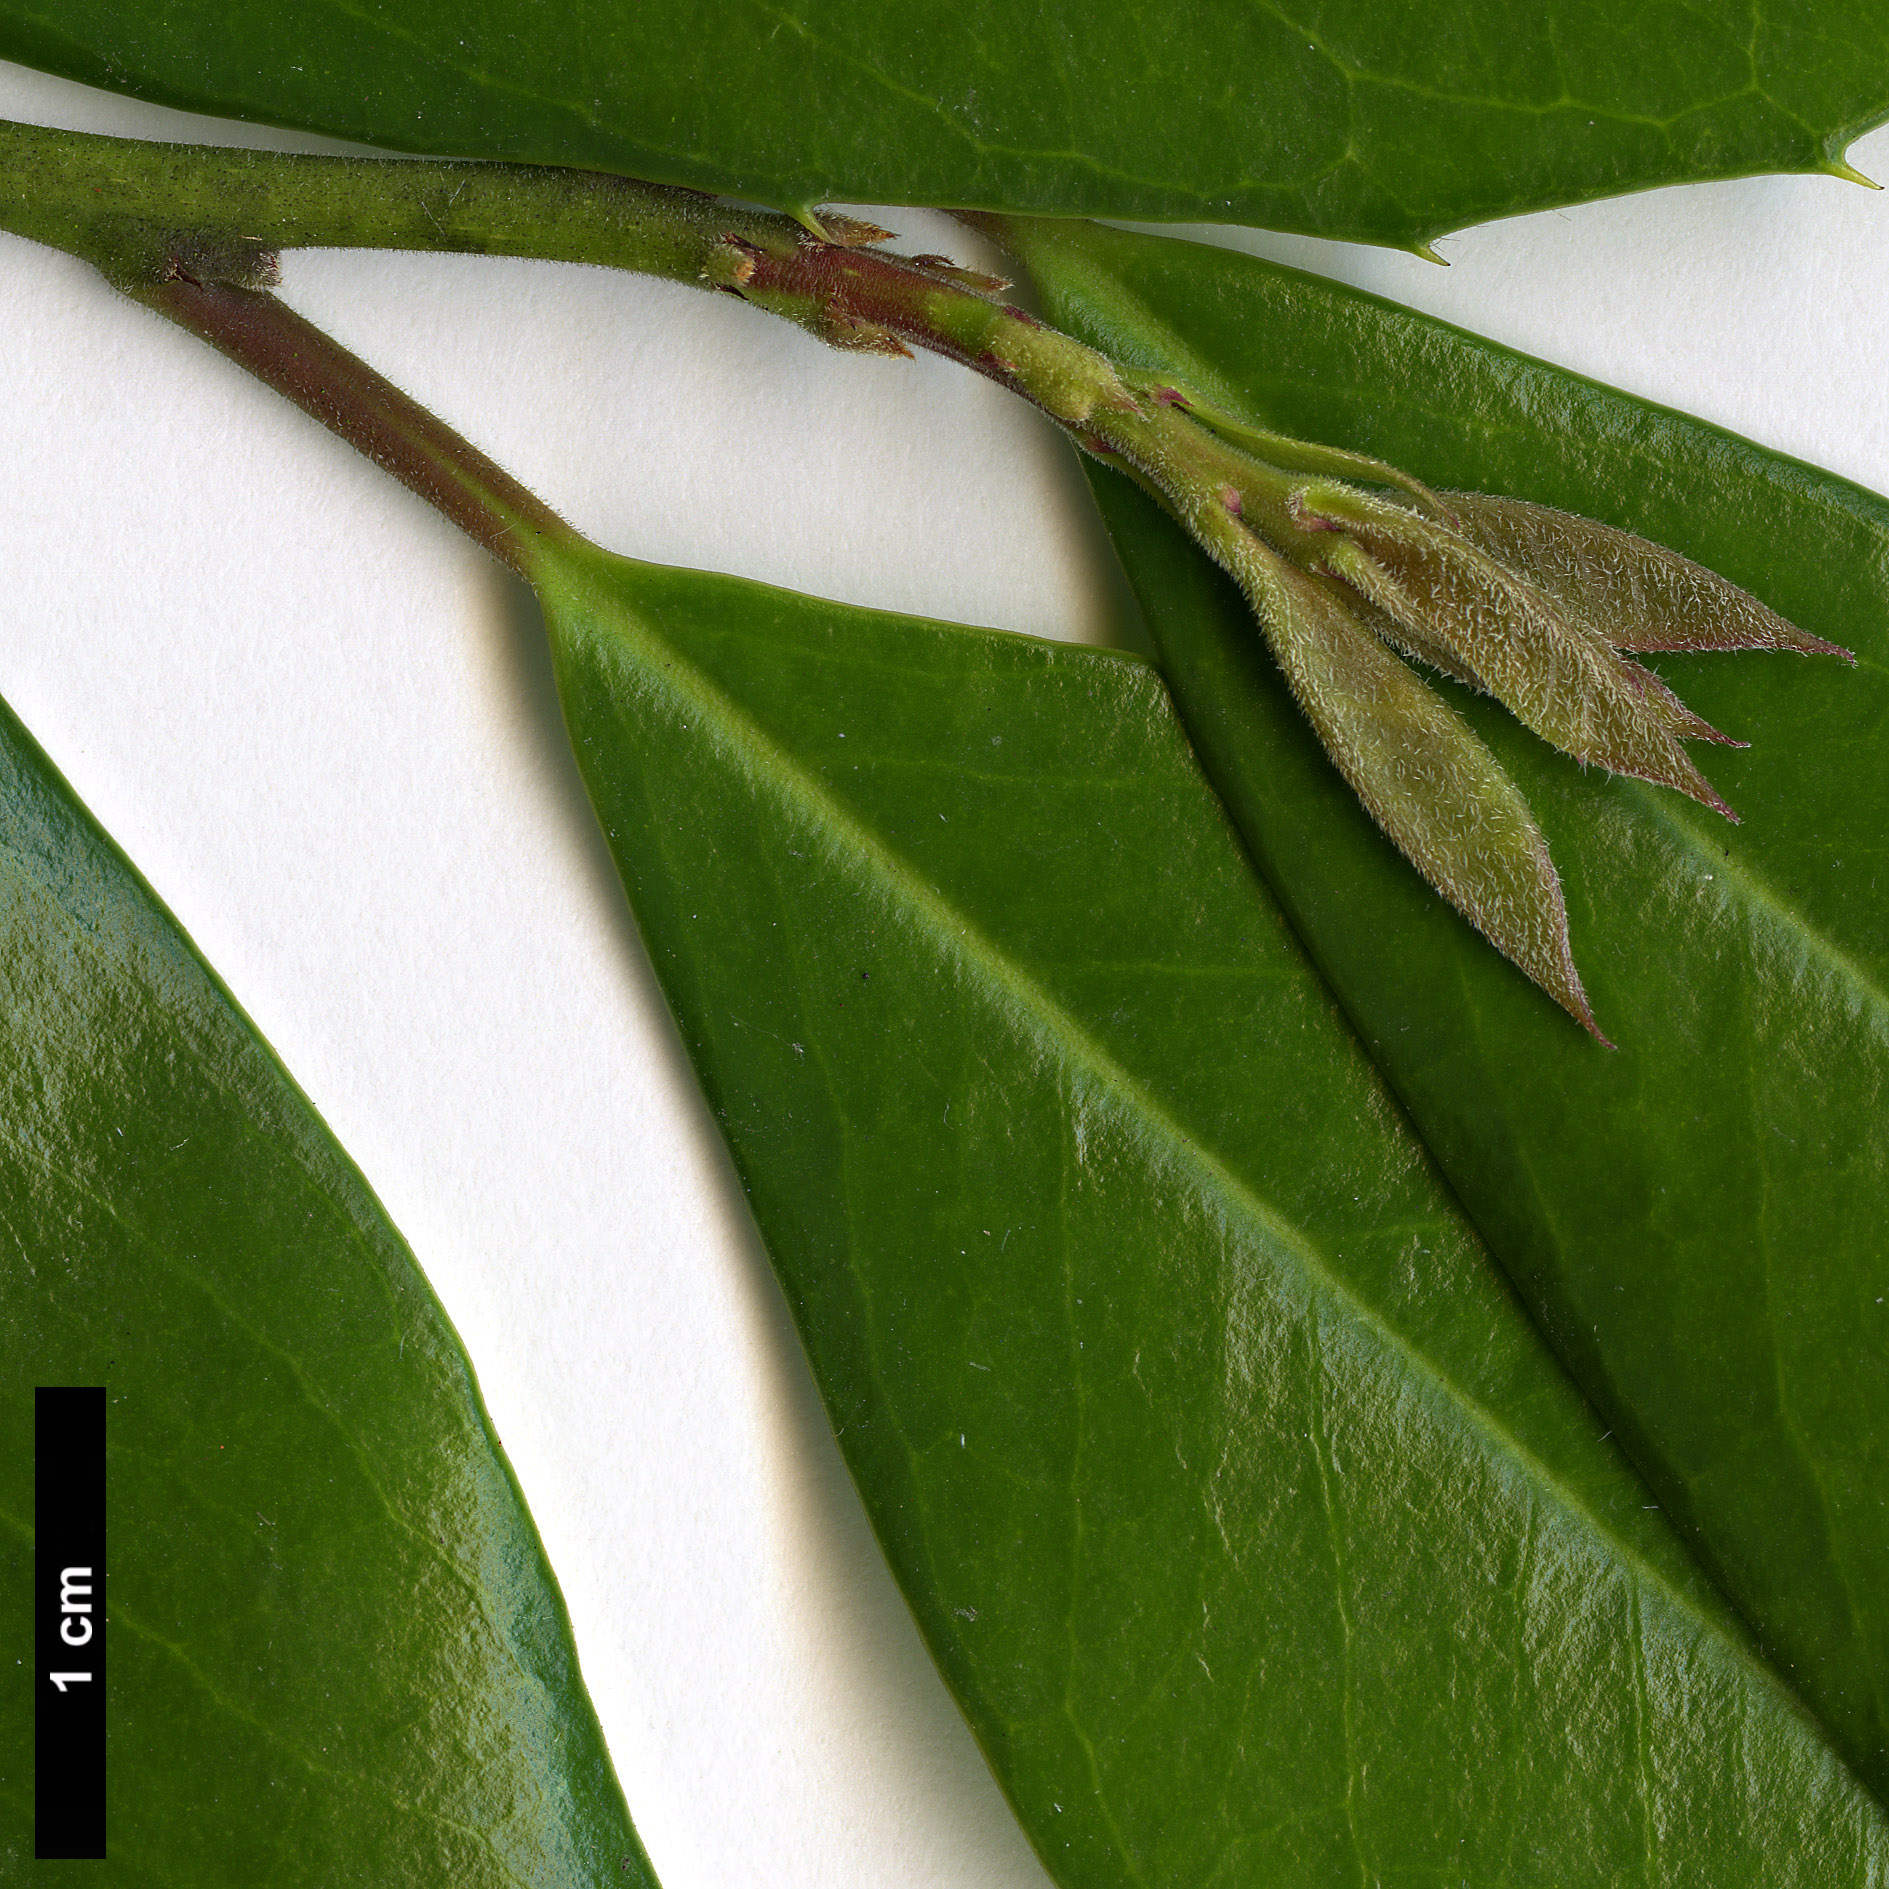 High resolution image: Family: Aquifoliaceae - Genus: Ilex - Taxon: cassine - SpeciesSub: × I.cumulicola '580 Lady'